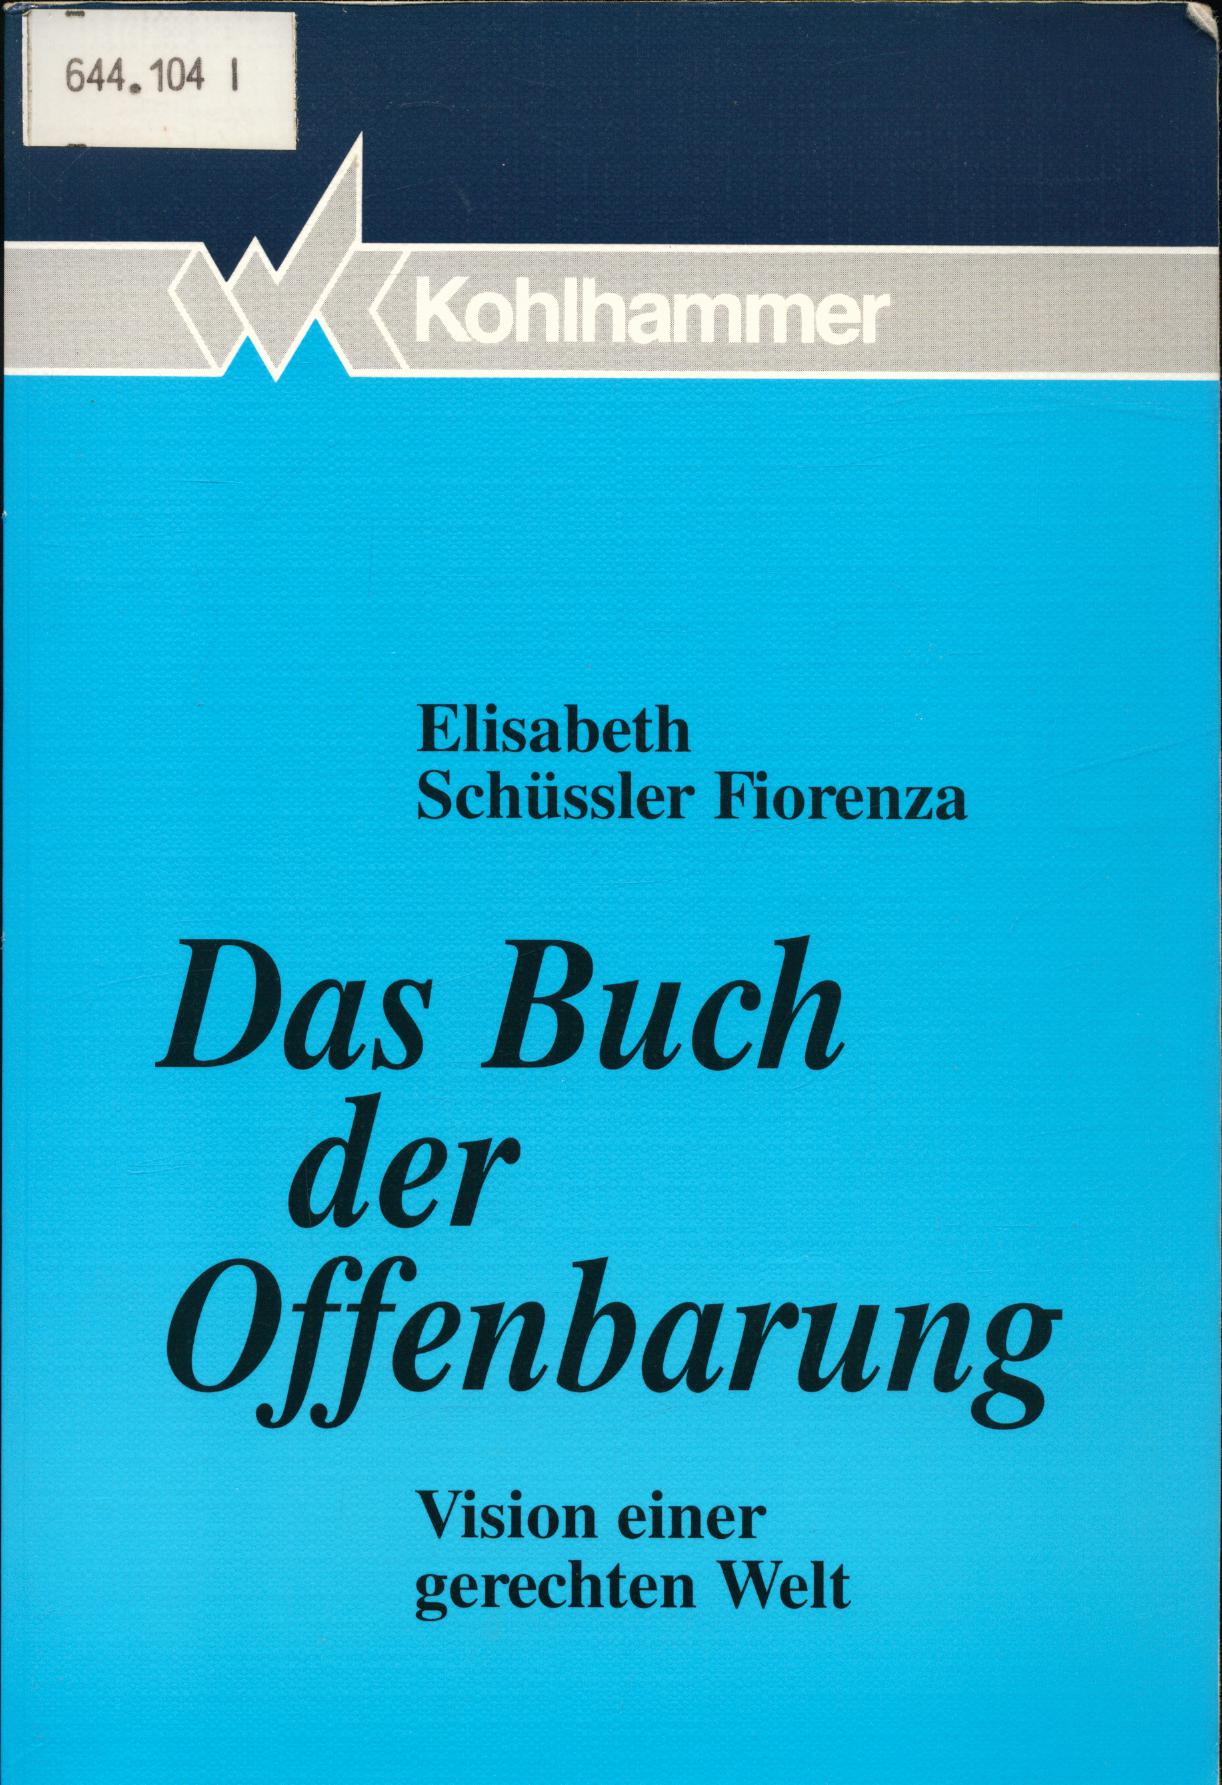 Das Buch der Offenbarung - Schüssler Fiorenza, Elisabeth und Melanie Graffam-Minkus